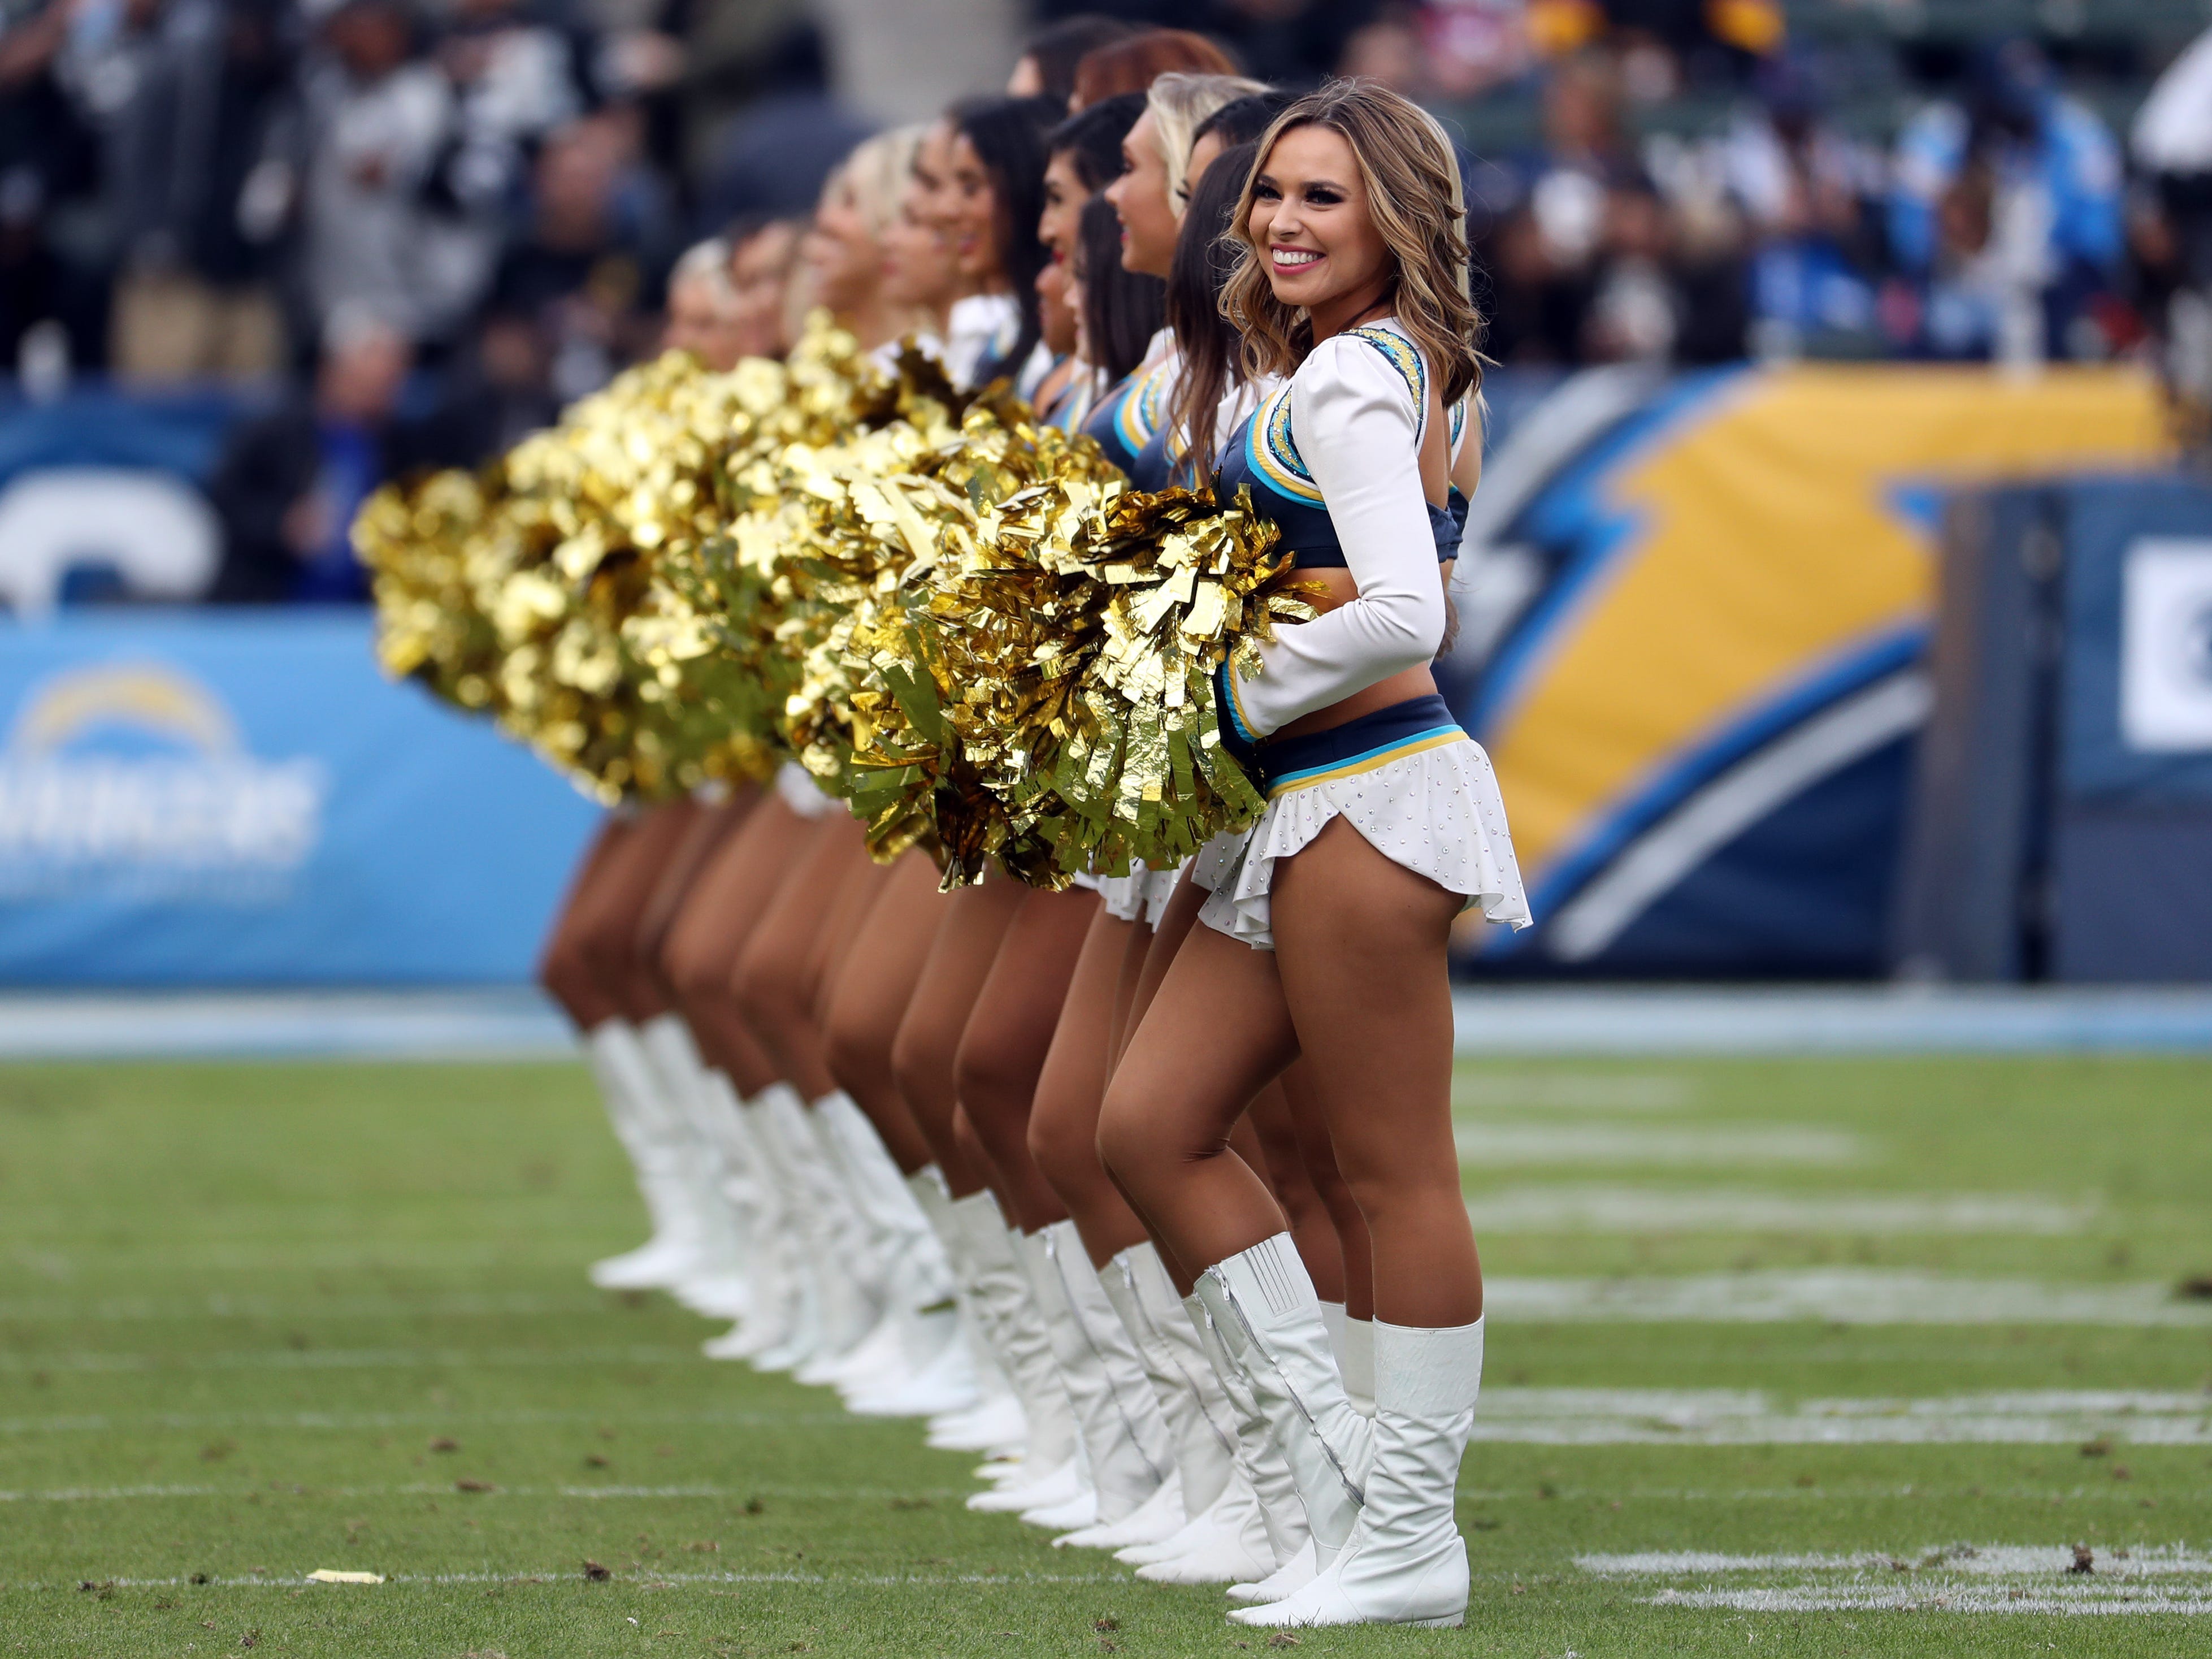 Cheerleader der Los Angeles Chargers treten am 22. Dezember 2019 während eines NFL-Spiels zwischen den Oakland Raiders und den Los Angeles Chargers auf